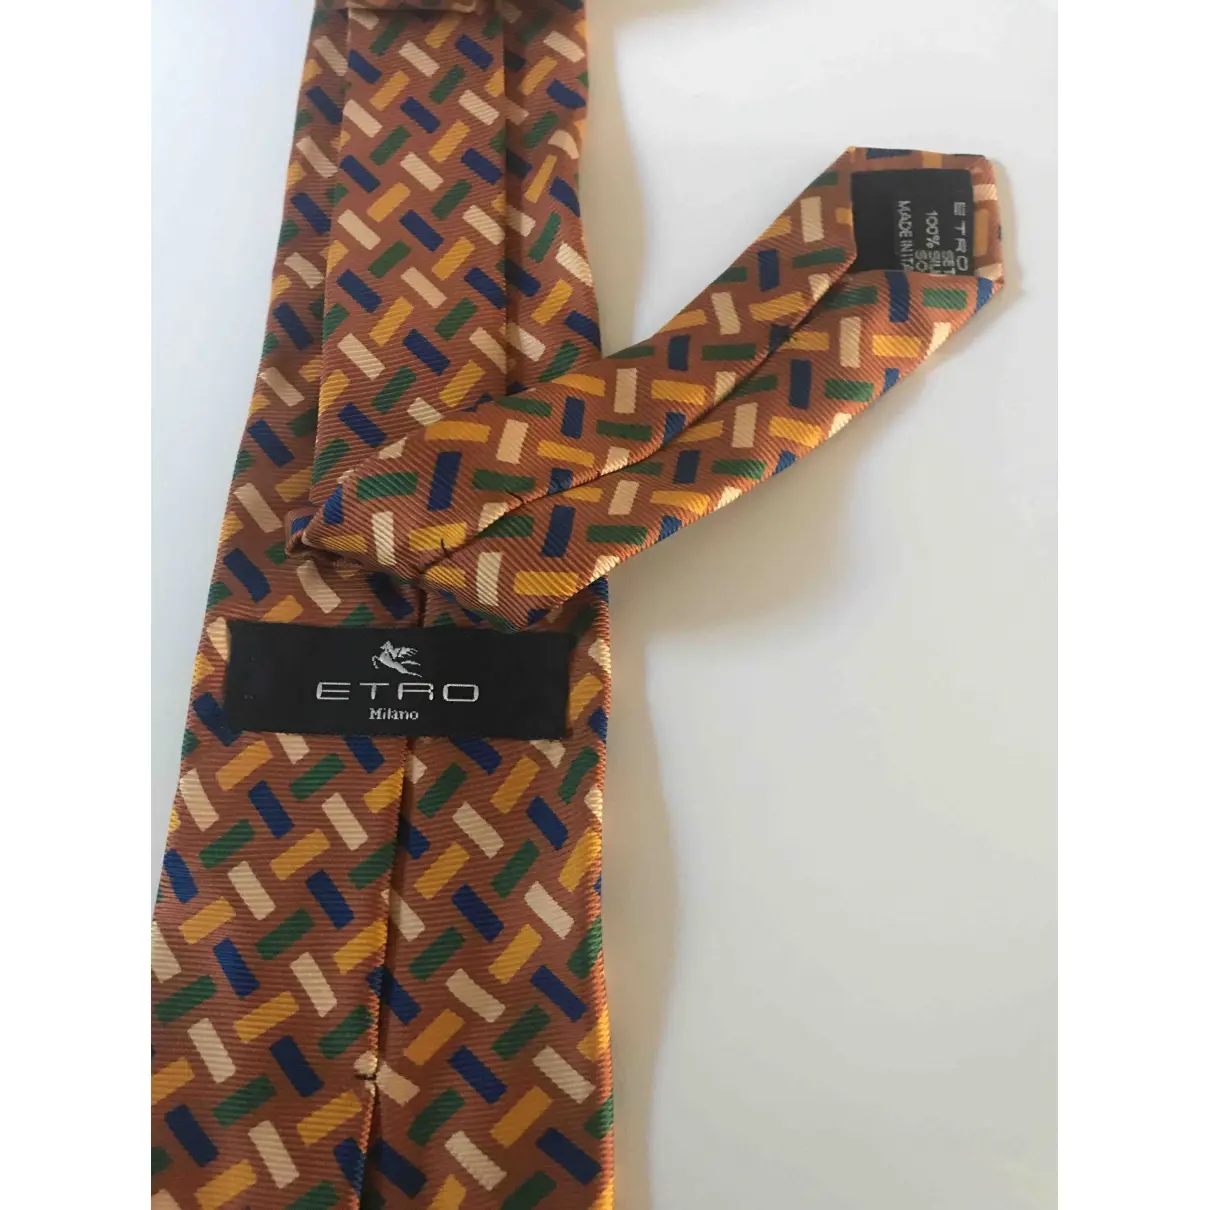 Etro Silk tie for sale